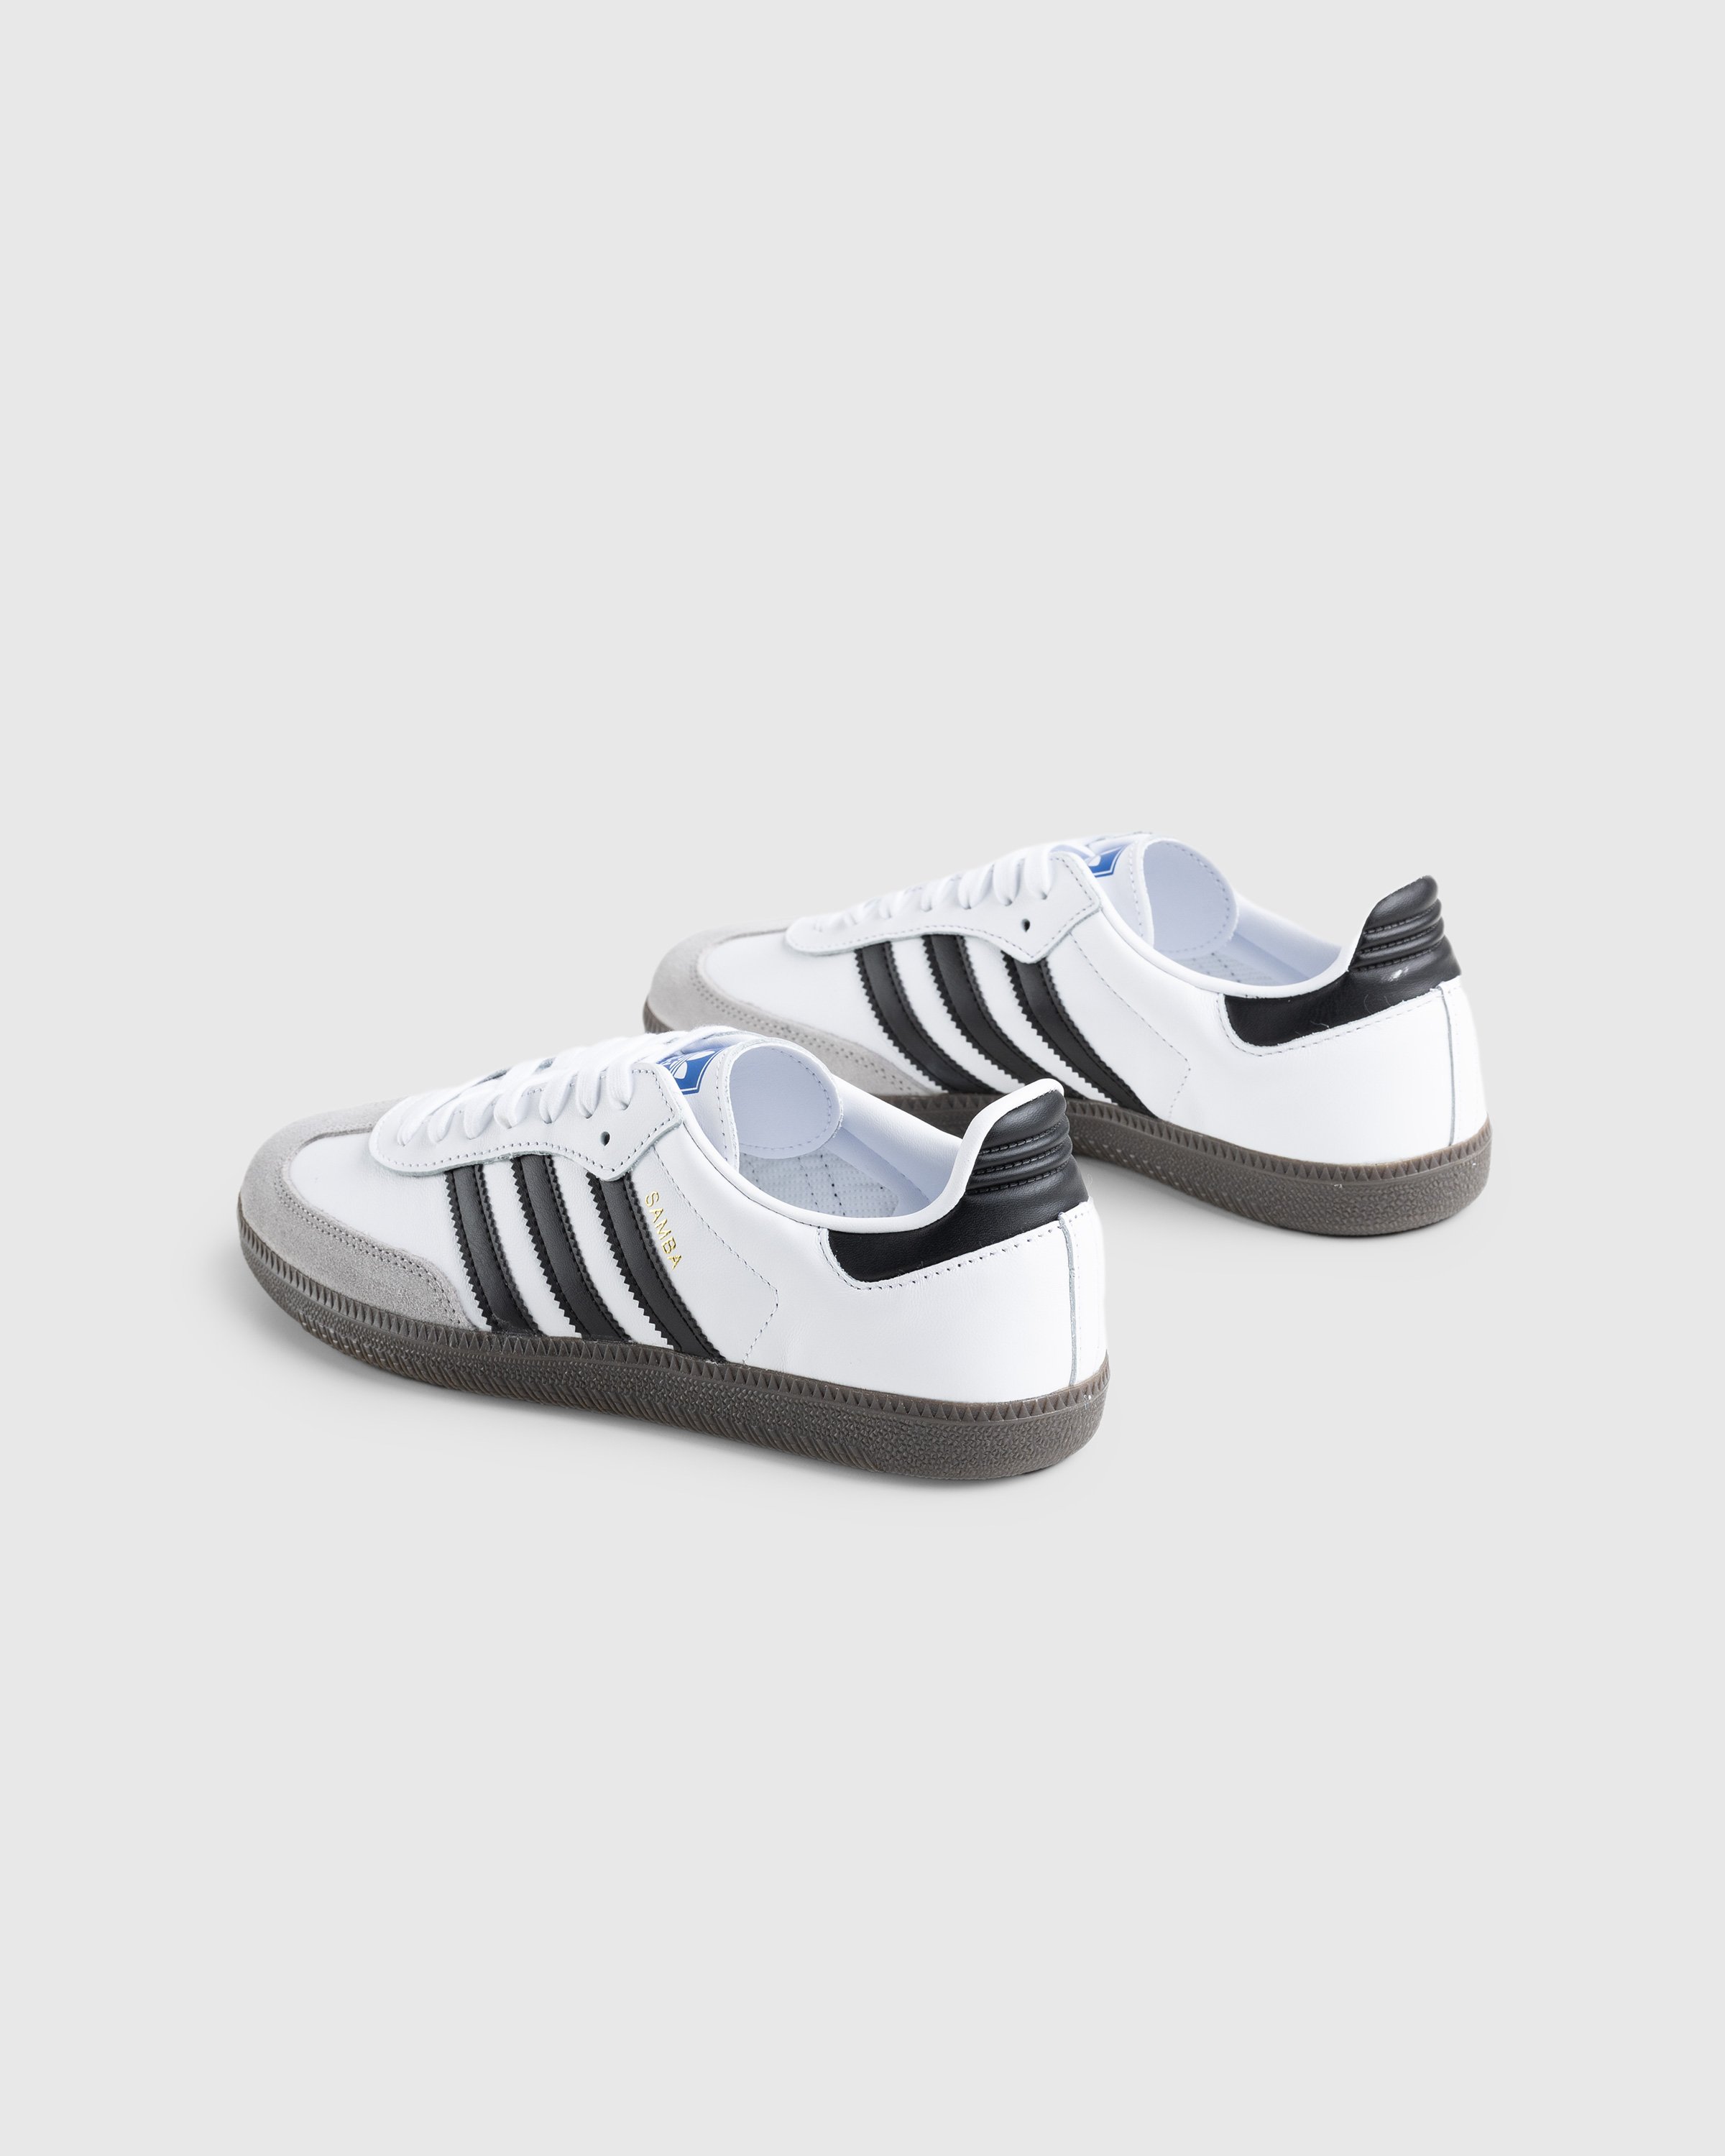 Adidas - Samba OG White - Footwear - White - Image 4